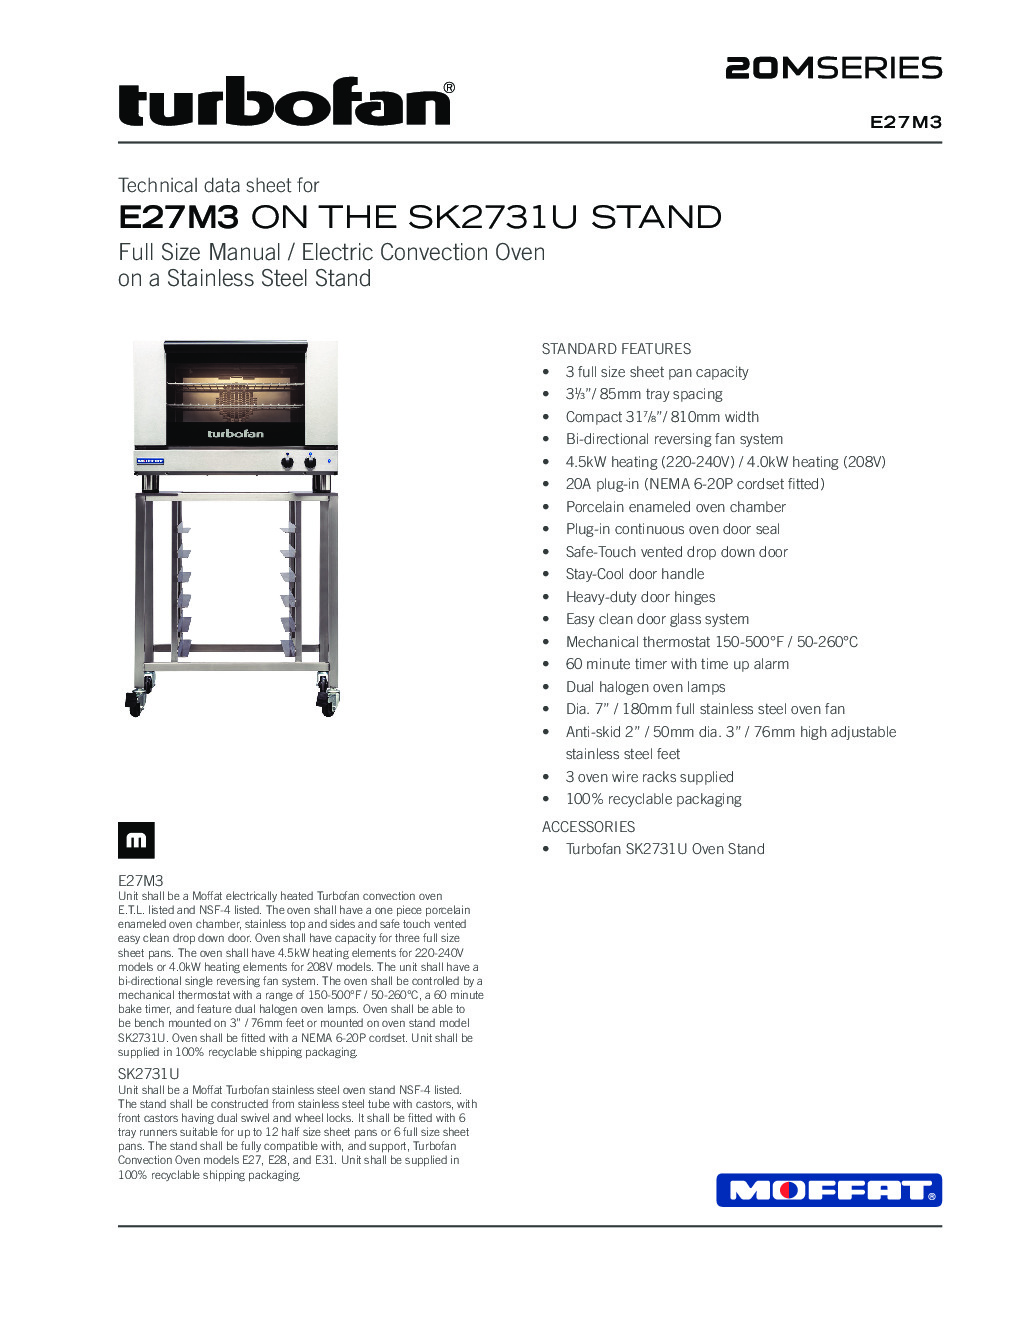 Moffat E27M3/SK2731U Electric Convection Oven